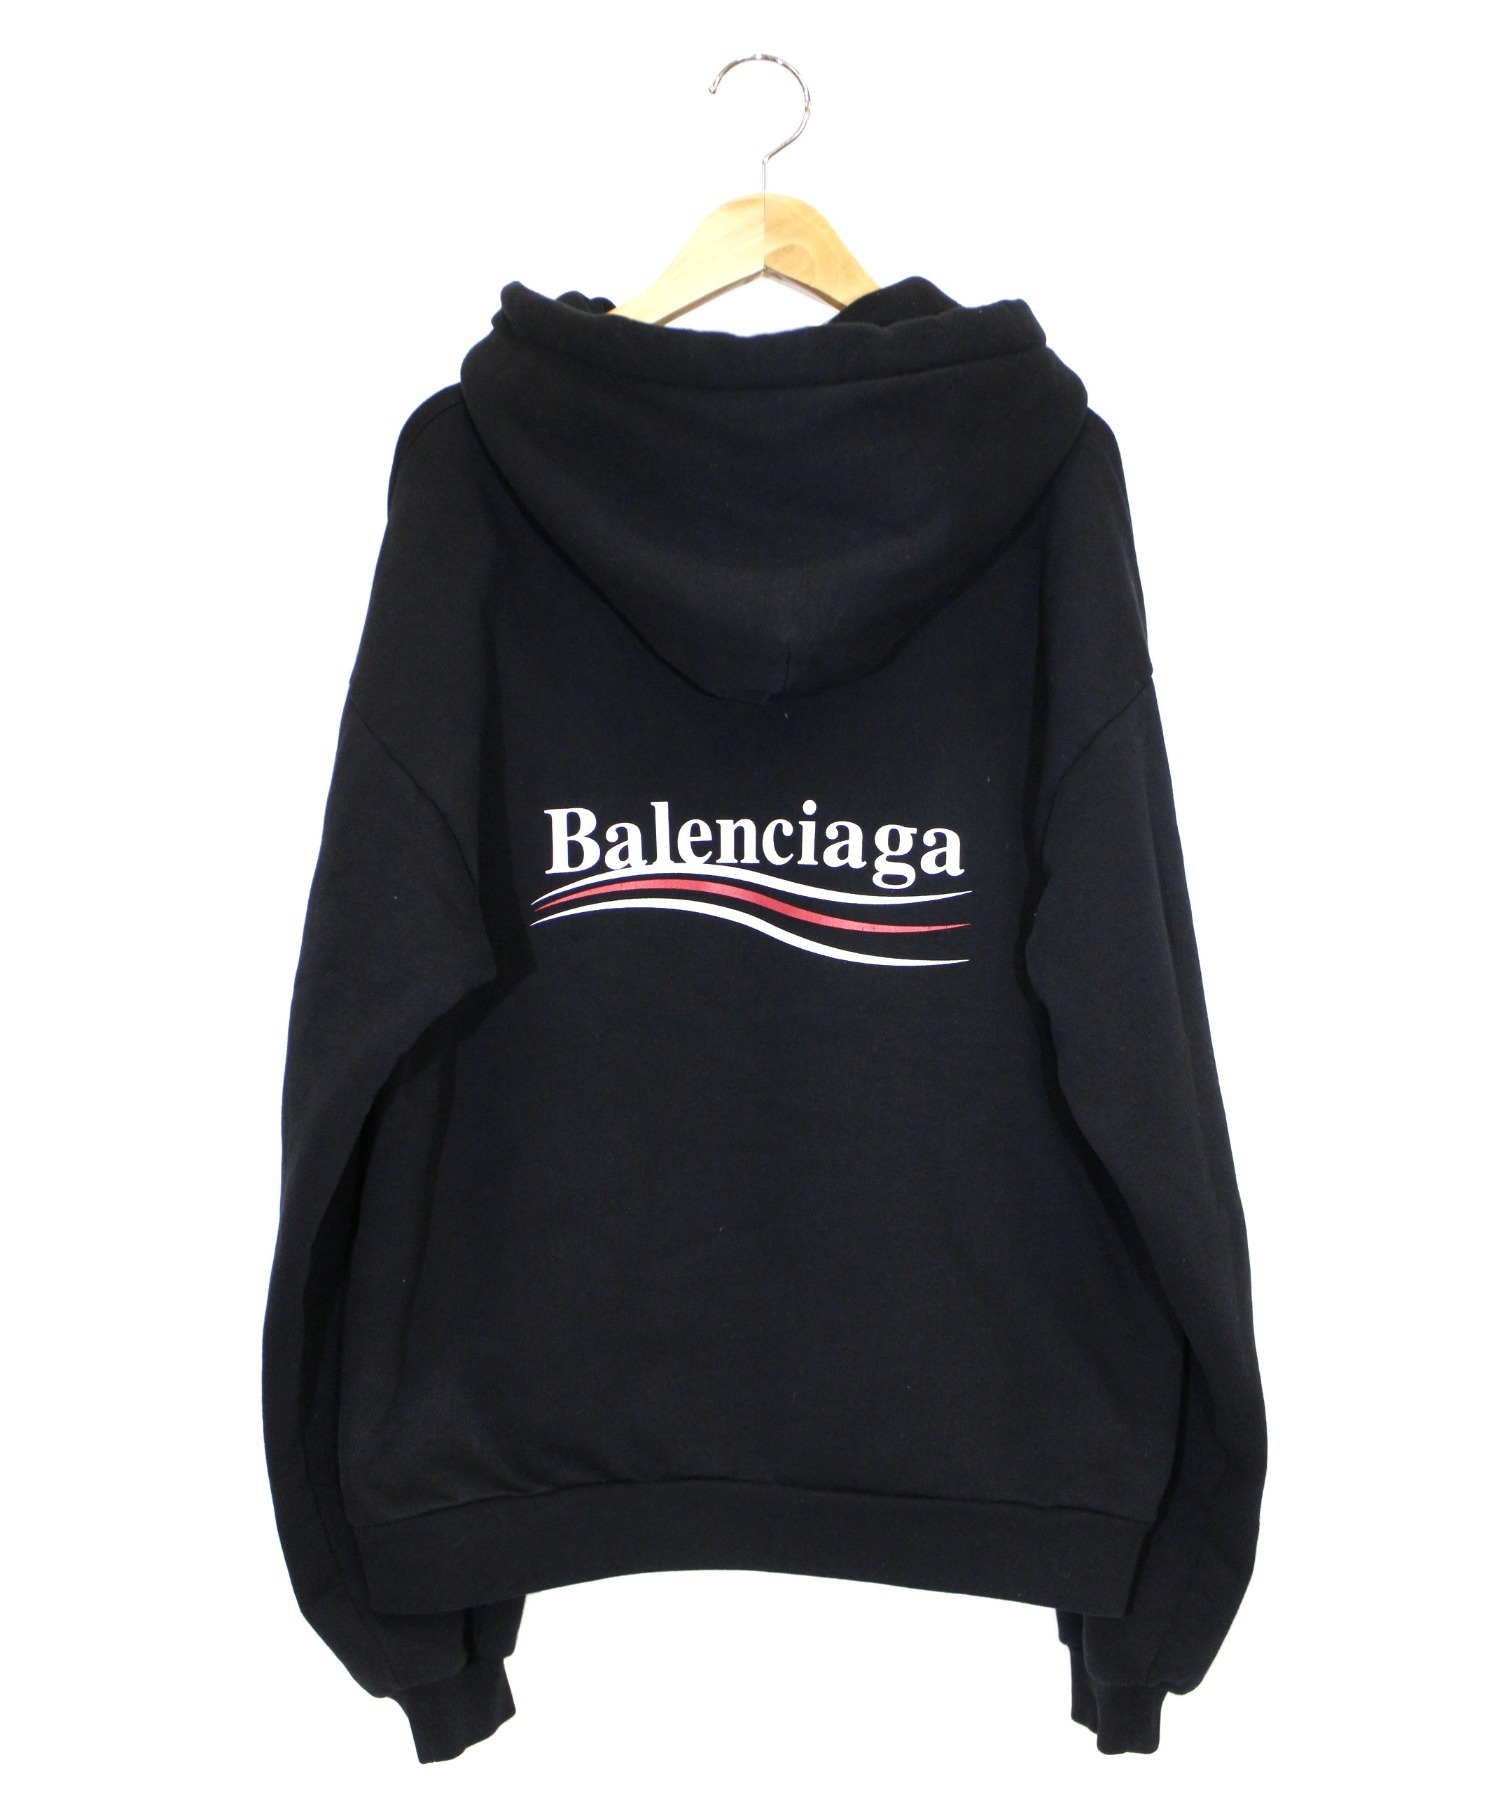 人気ブランドの バレンシアガ BALENCIAGA キャンペーンロゴパーカー 